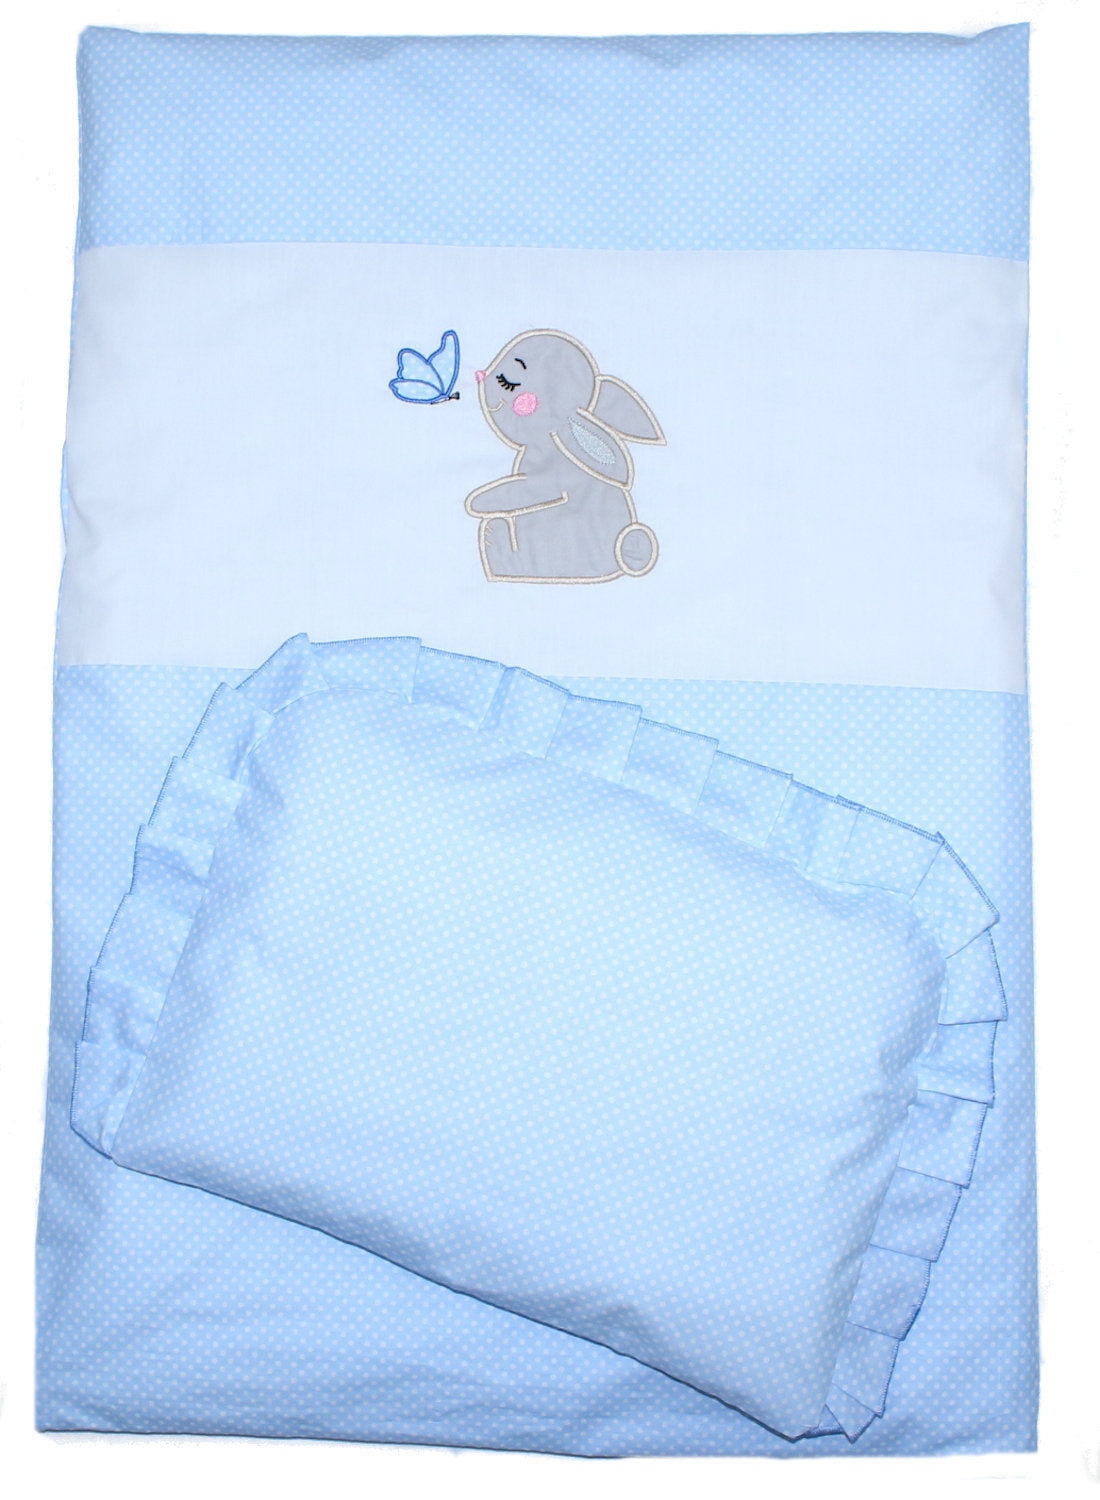 2- 4tlg Kinderwagenset - Hase- Punkten Blau - Bettwäsche für Kinderwagen Bezüge Decke Kissen